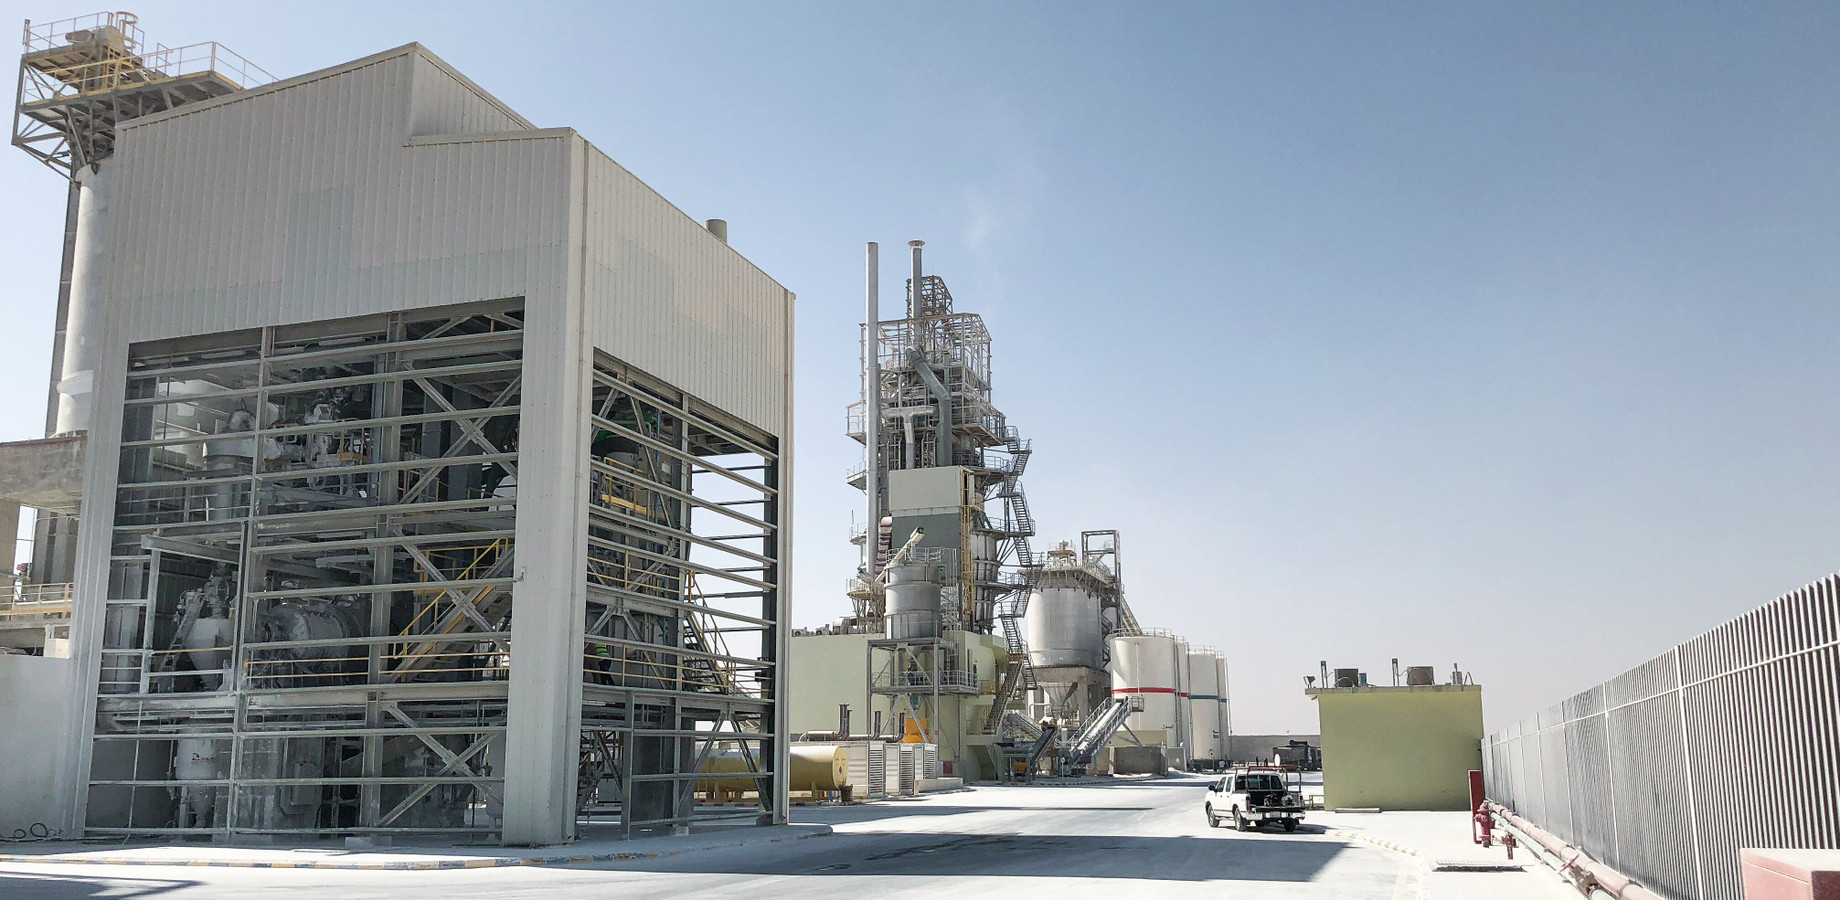 Astra Mining Al Kharj 300 t/d Maerz PFR kiln and hydration plant